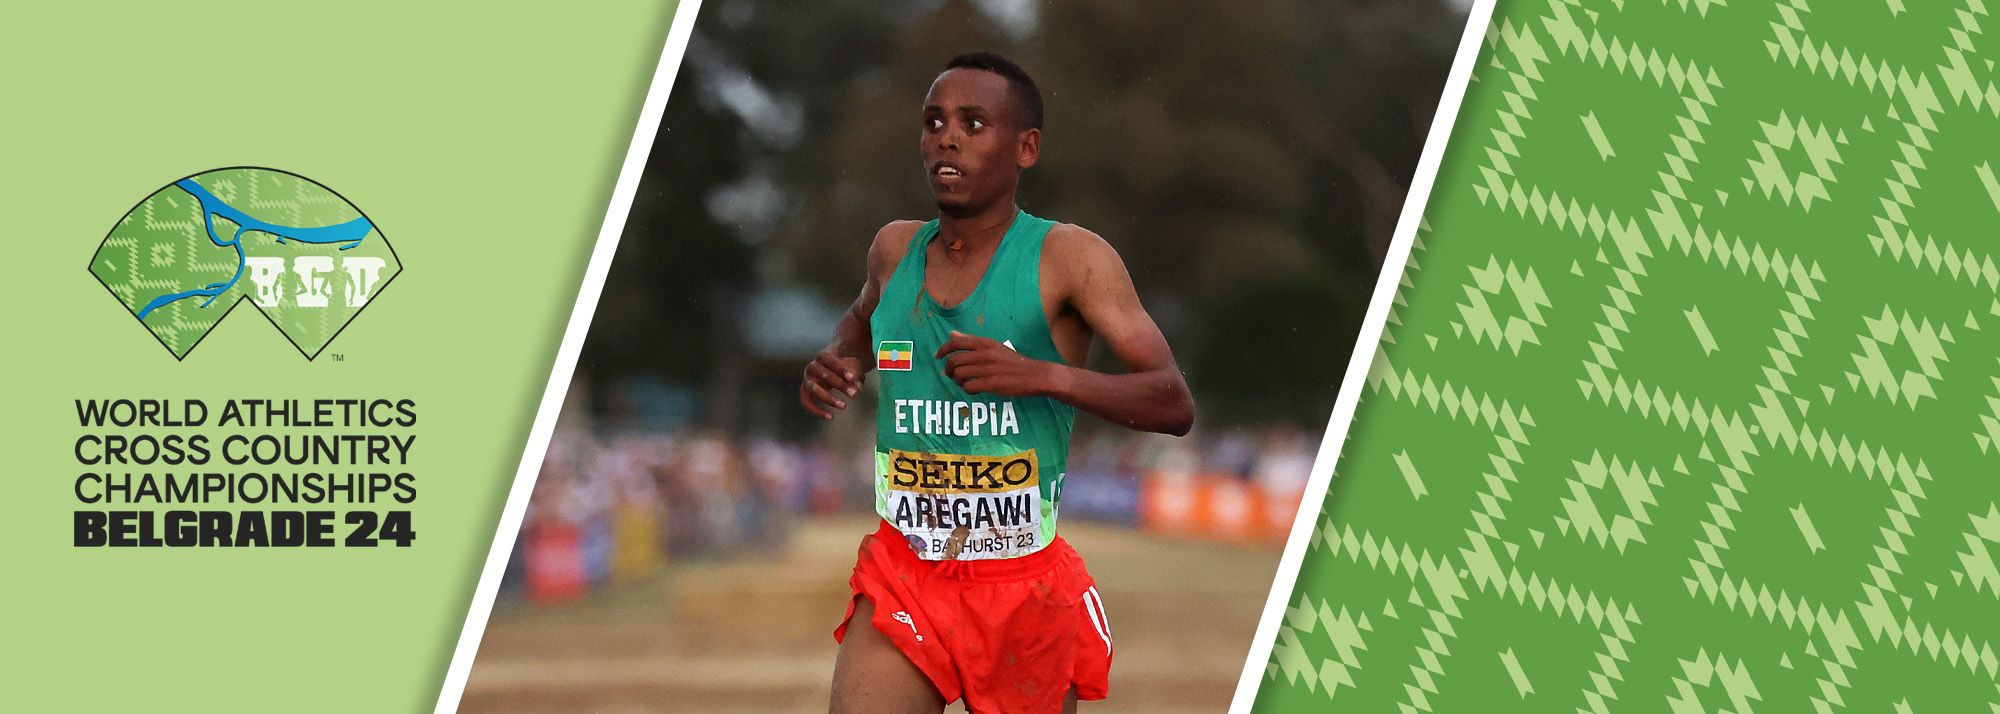 Етиопљанин , тркач на дуге стазе, светски освајач сребрне медаље у кросу и други најбржи тркач на 10km у историји представиће се Београду на предстојећем планетарном шампионату у кросу које је на програму 30. марта 2024.